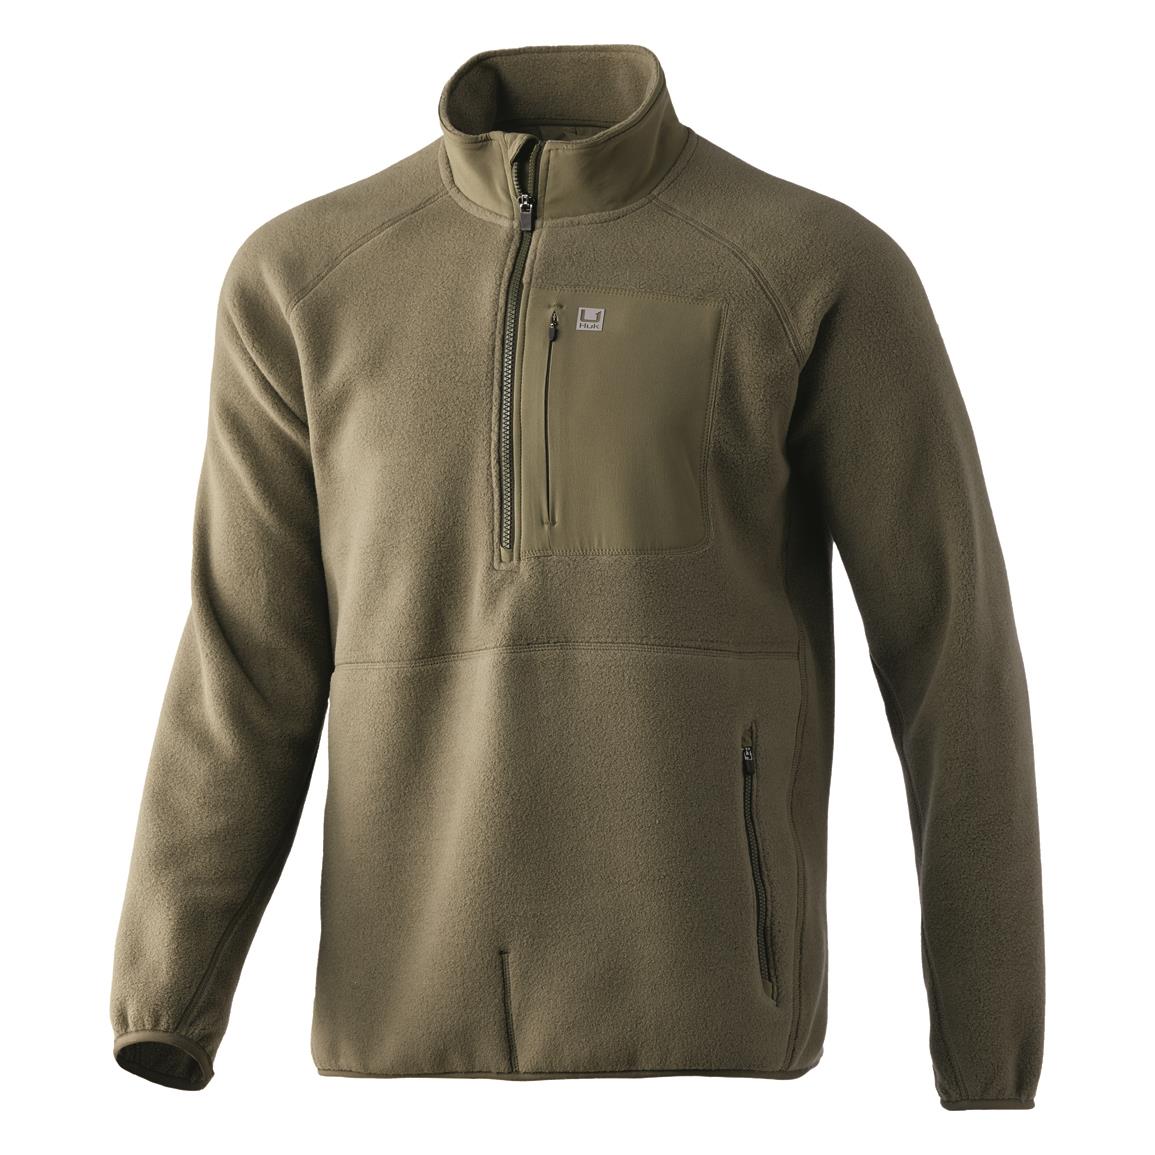 Huk Men's Waypoint Fleece Half-zipper Pullover Jacket, Moss